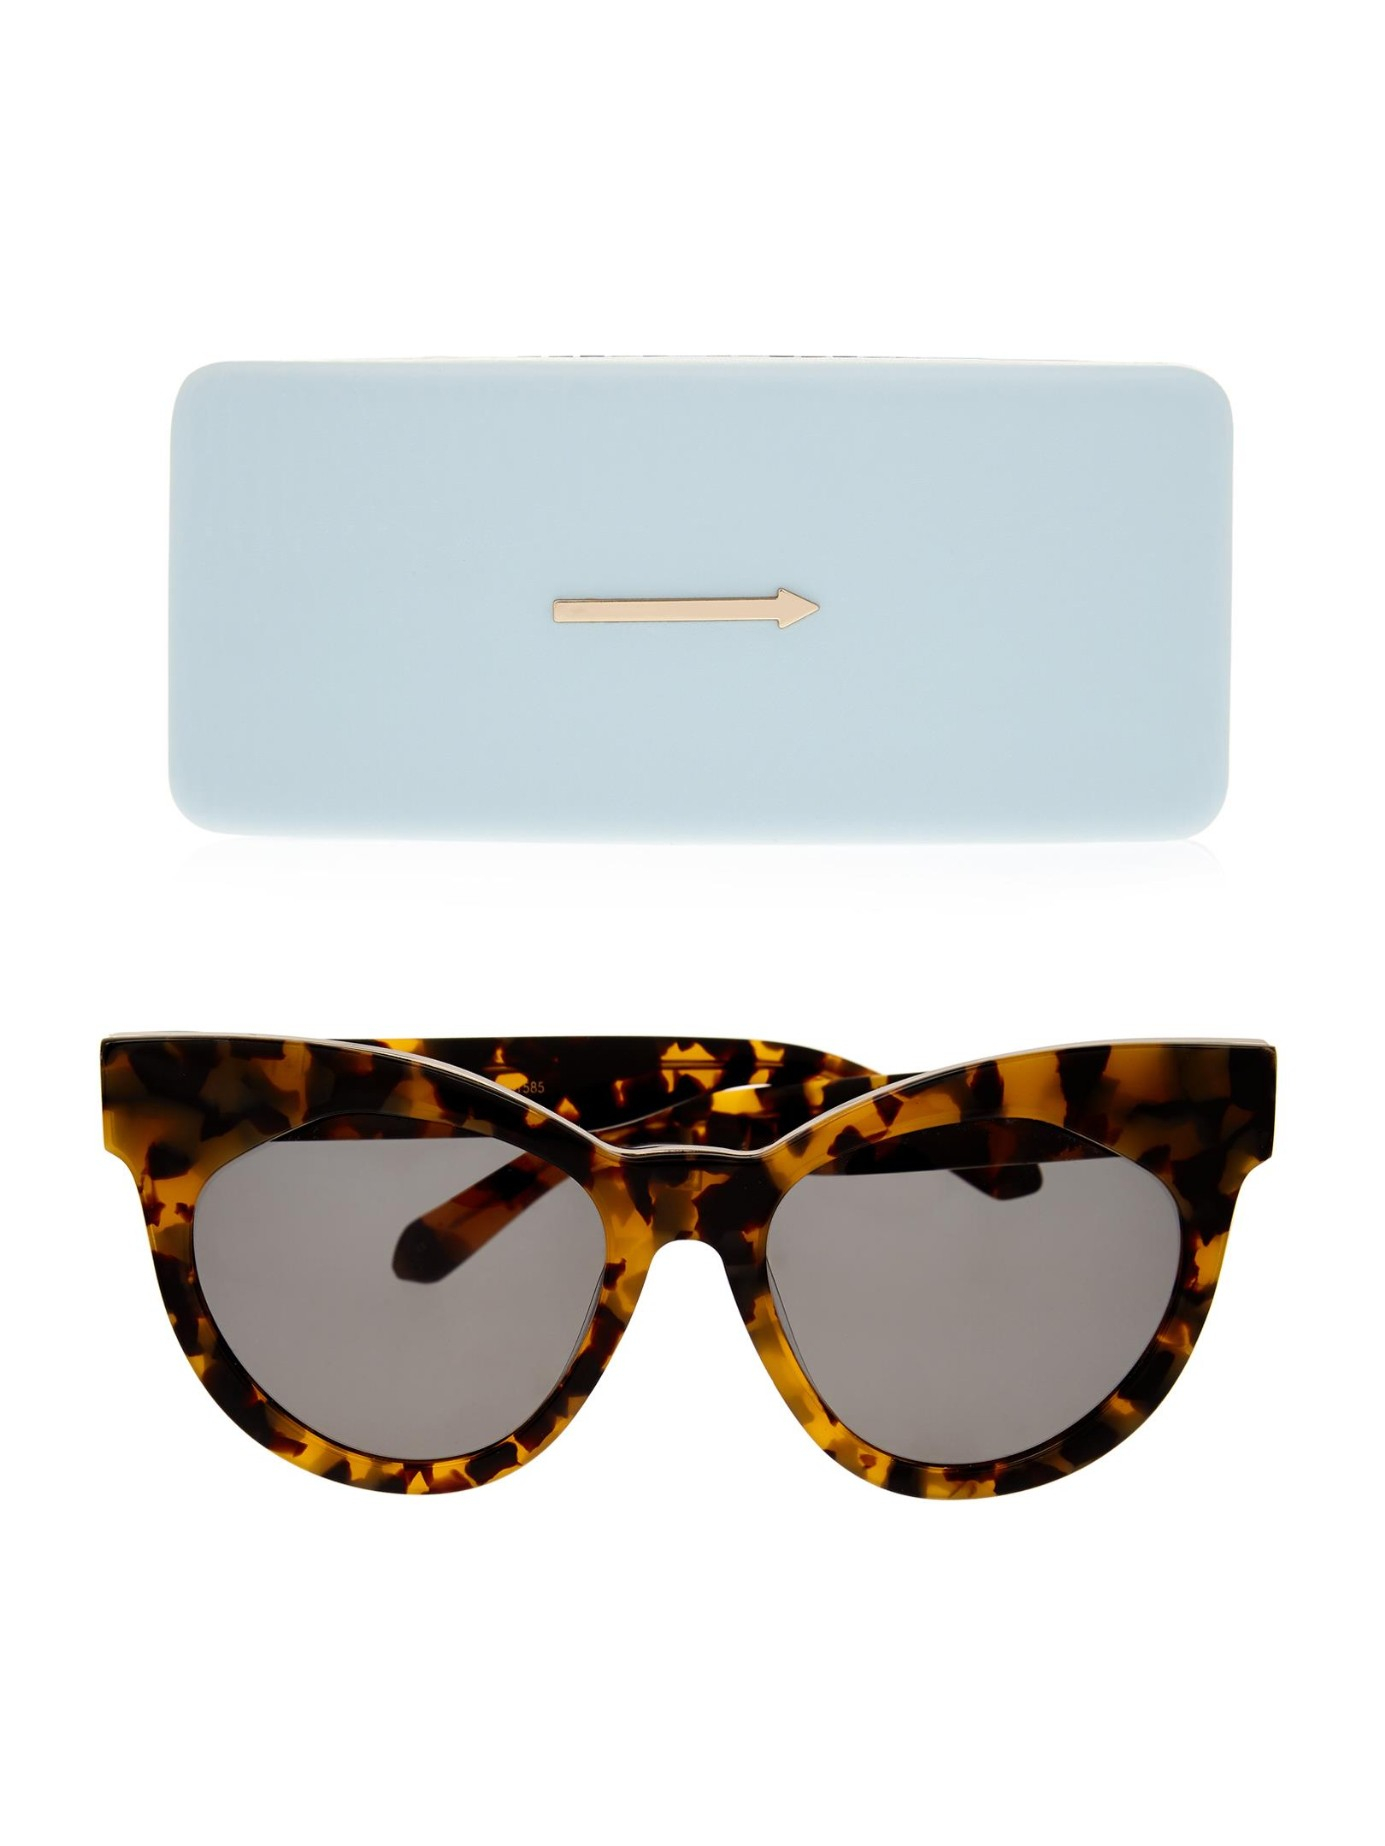 Karen Walker Starburst Cat-eye Frame Sunglasses in Brown - Lyst